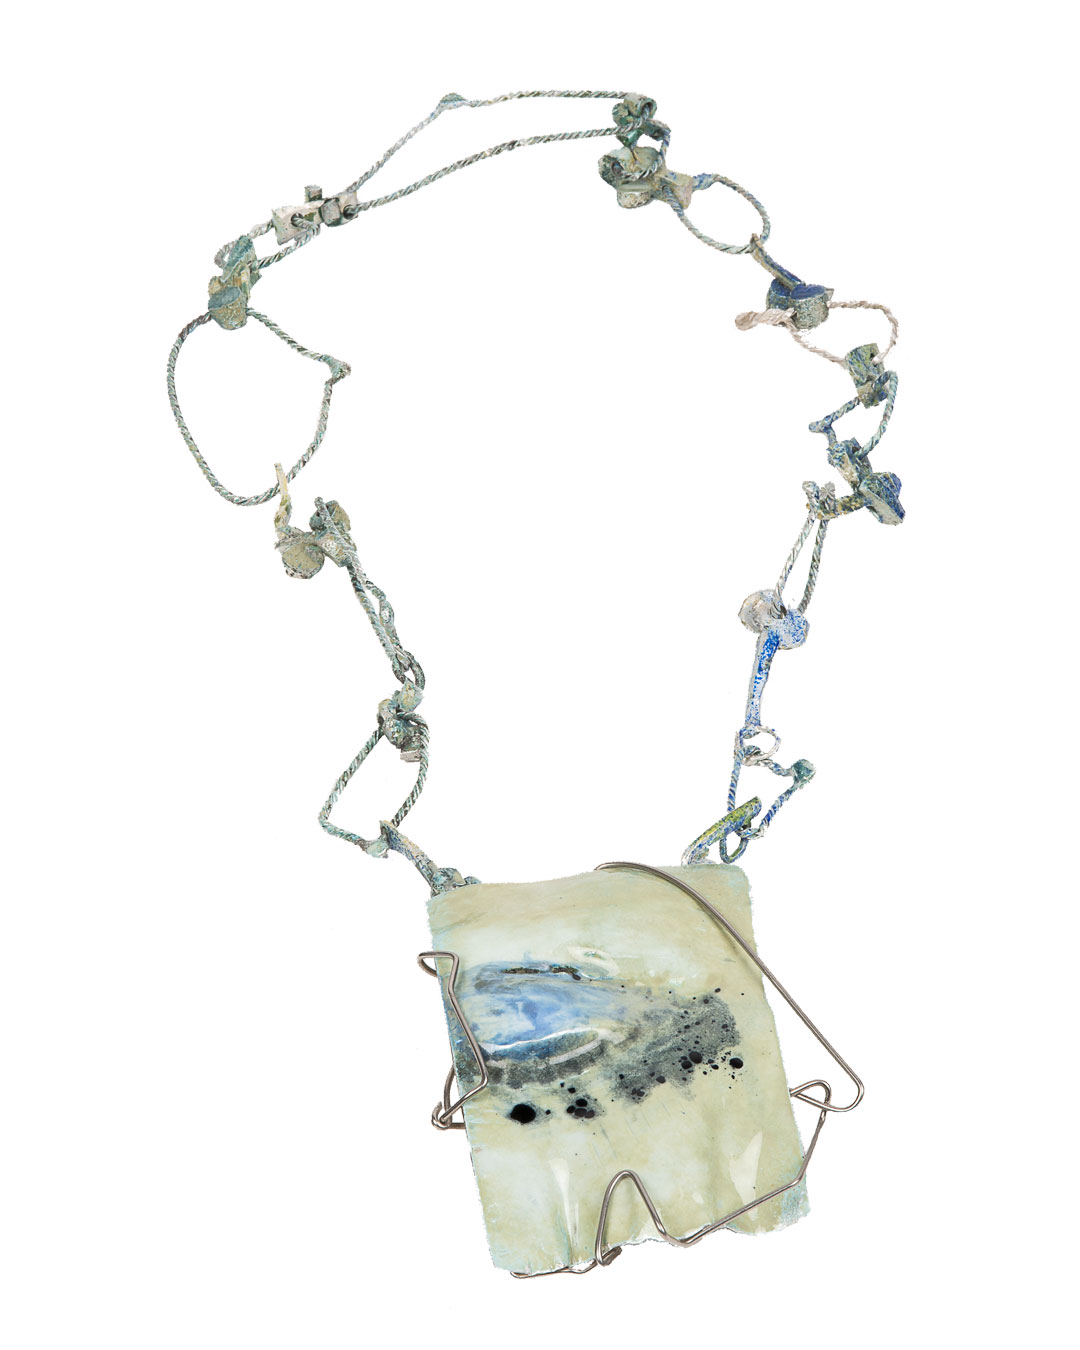 Rudolf Kocéa, Tears, 2019, necklace; fine silver, enamel, stainless steel, pendant: 80 x 110 x 20 mm, L 600 mm, €6500